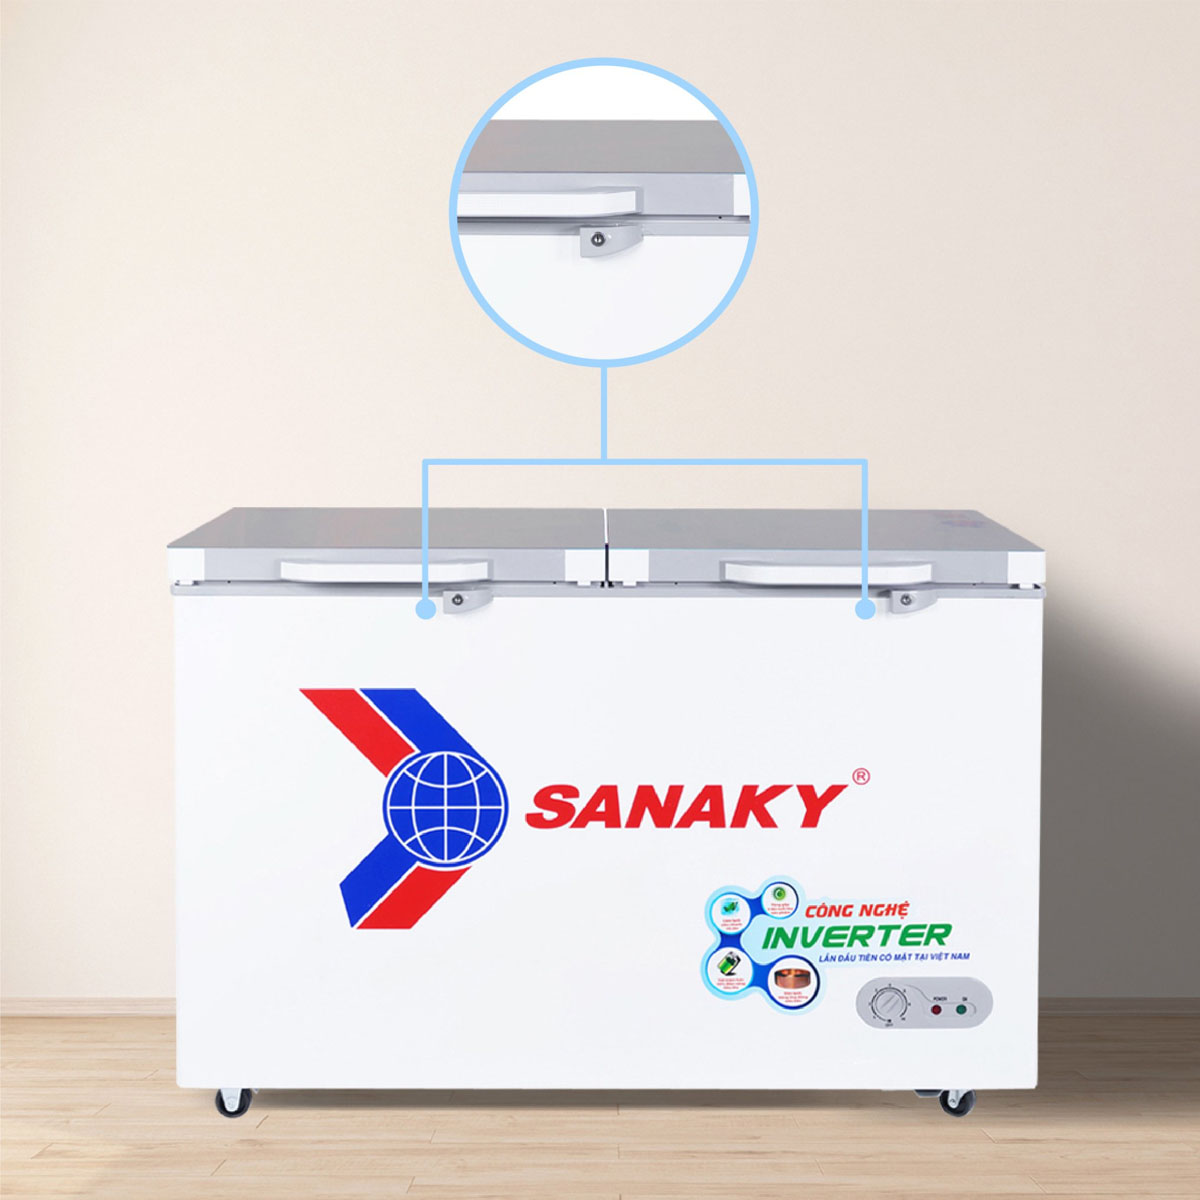 Tủ Đông Sanaky VH-4099A4 được trang bị khóa an toàn tiện lợi